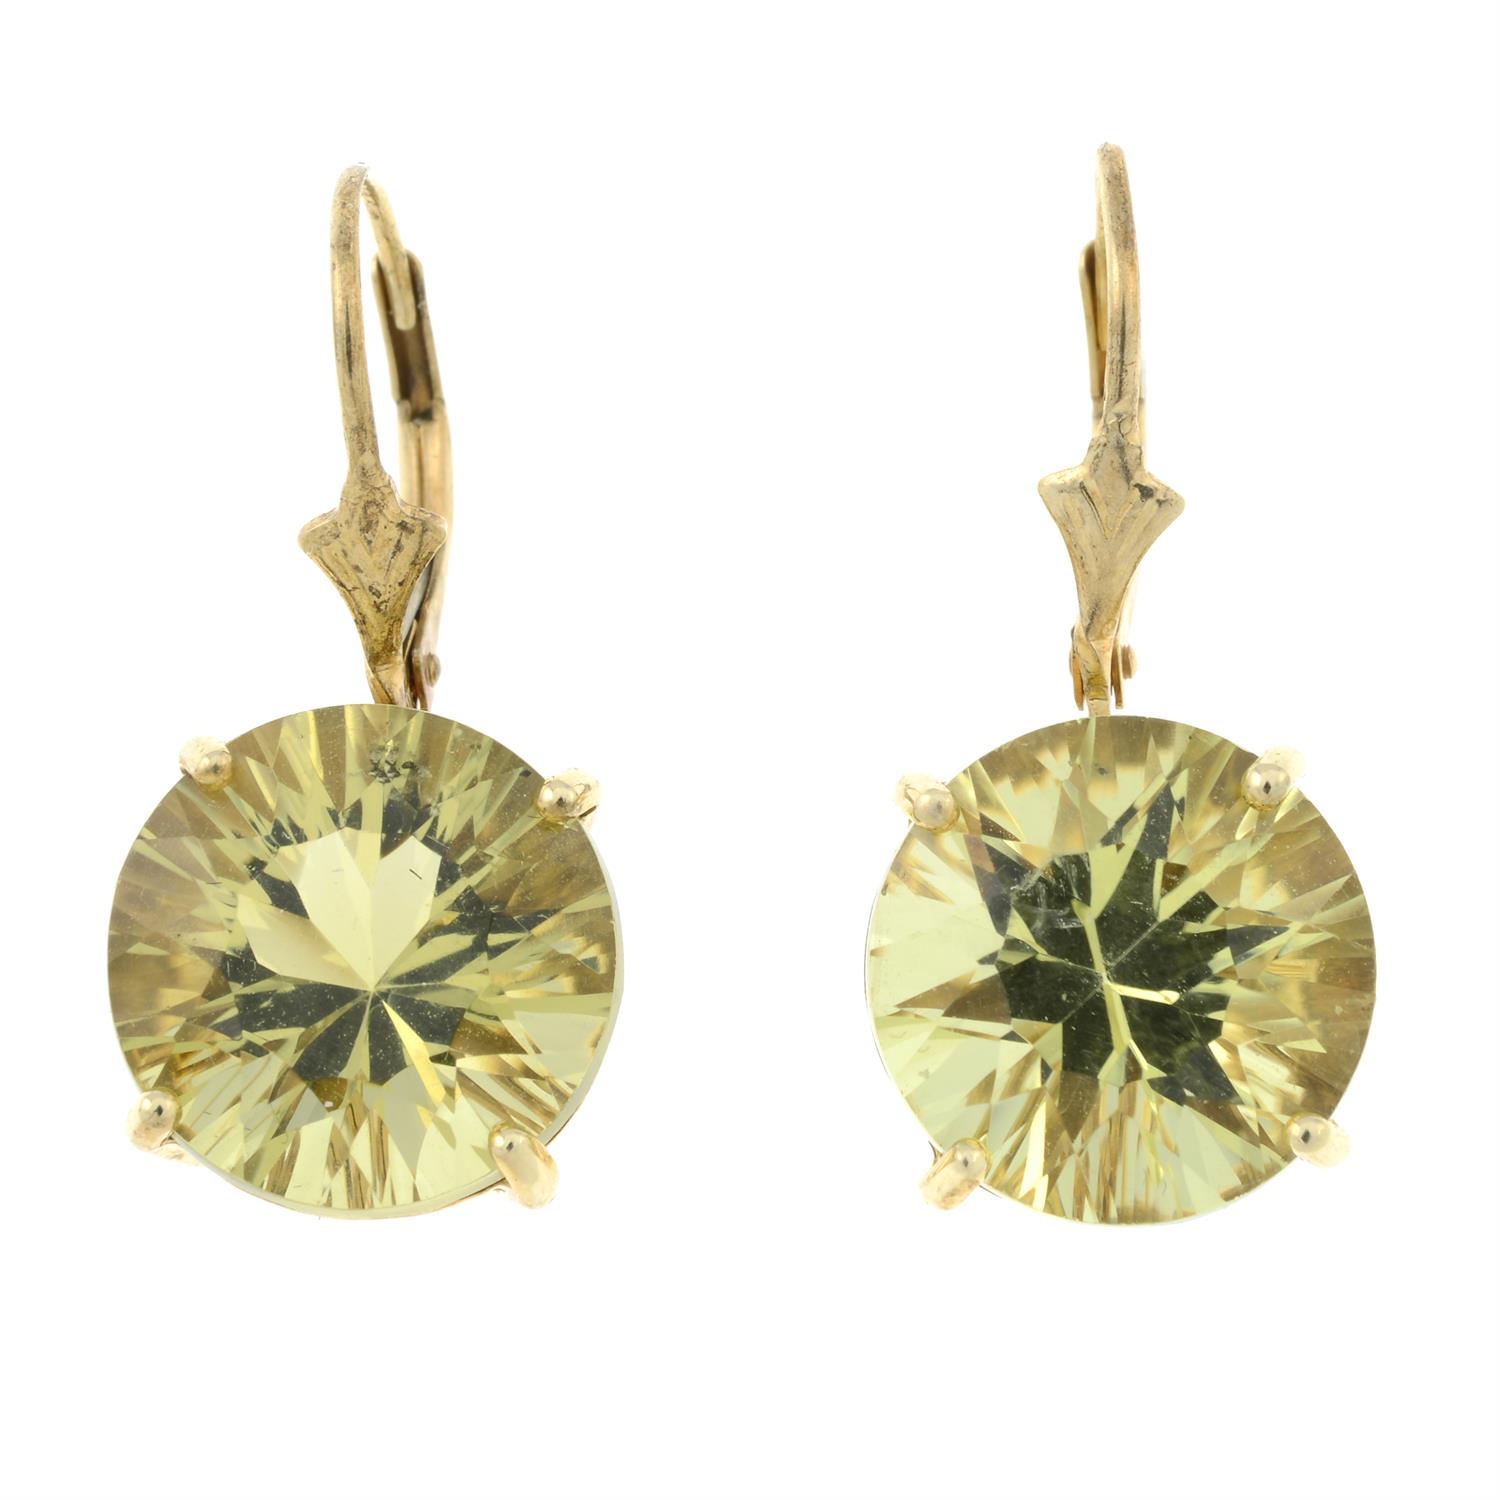 A pair of citrine earrings.